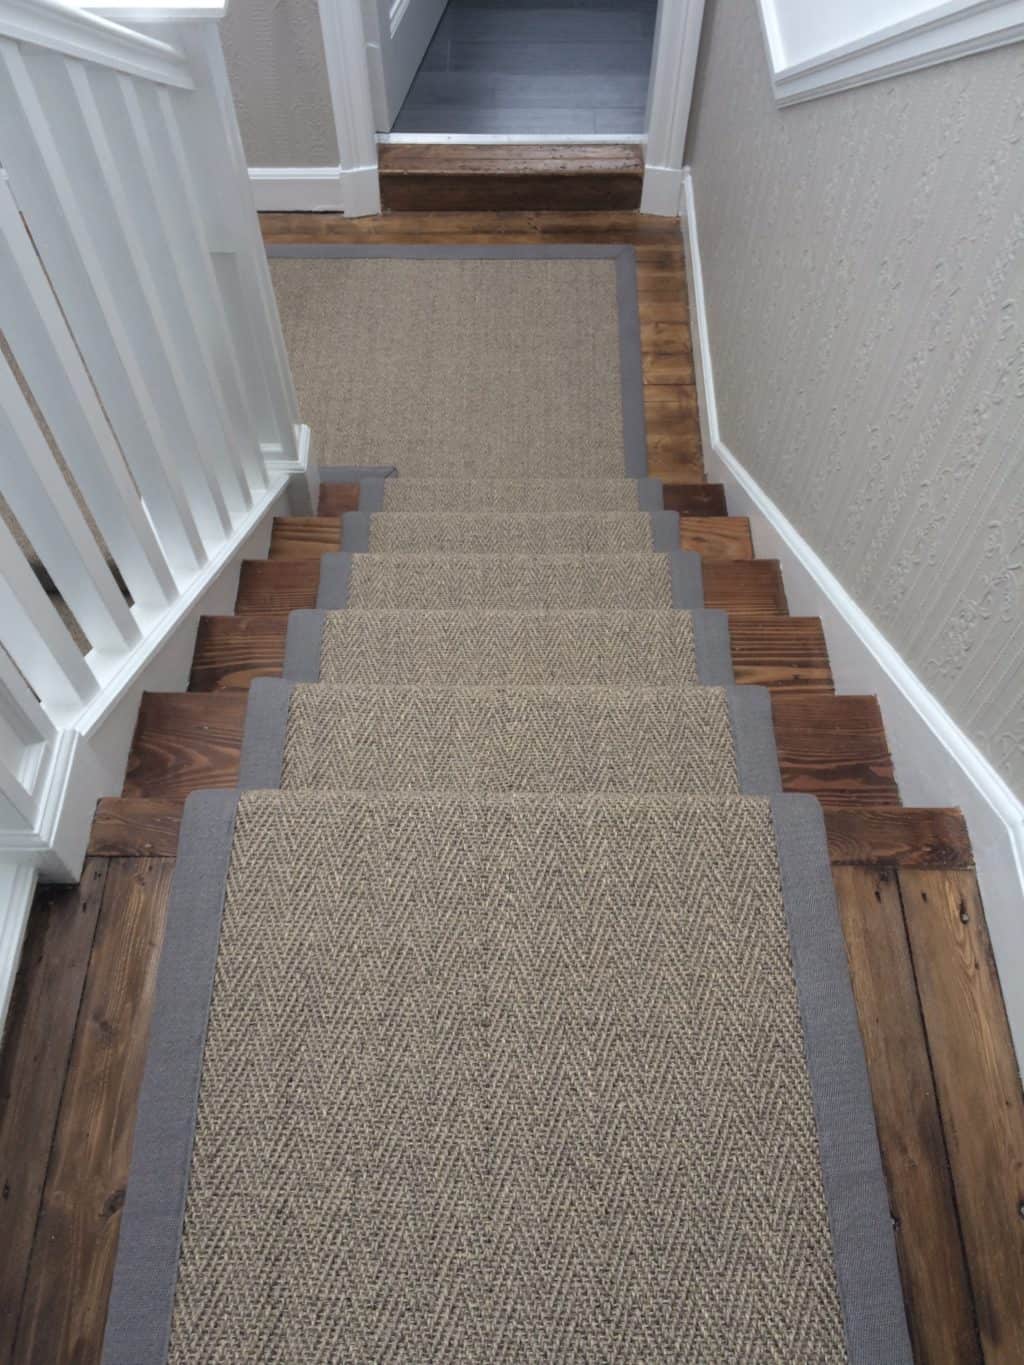 sisal stair runner by alternative flooring with grey binding